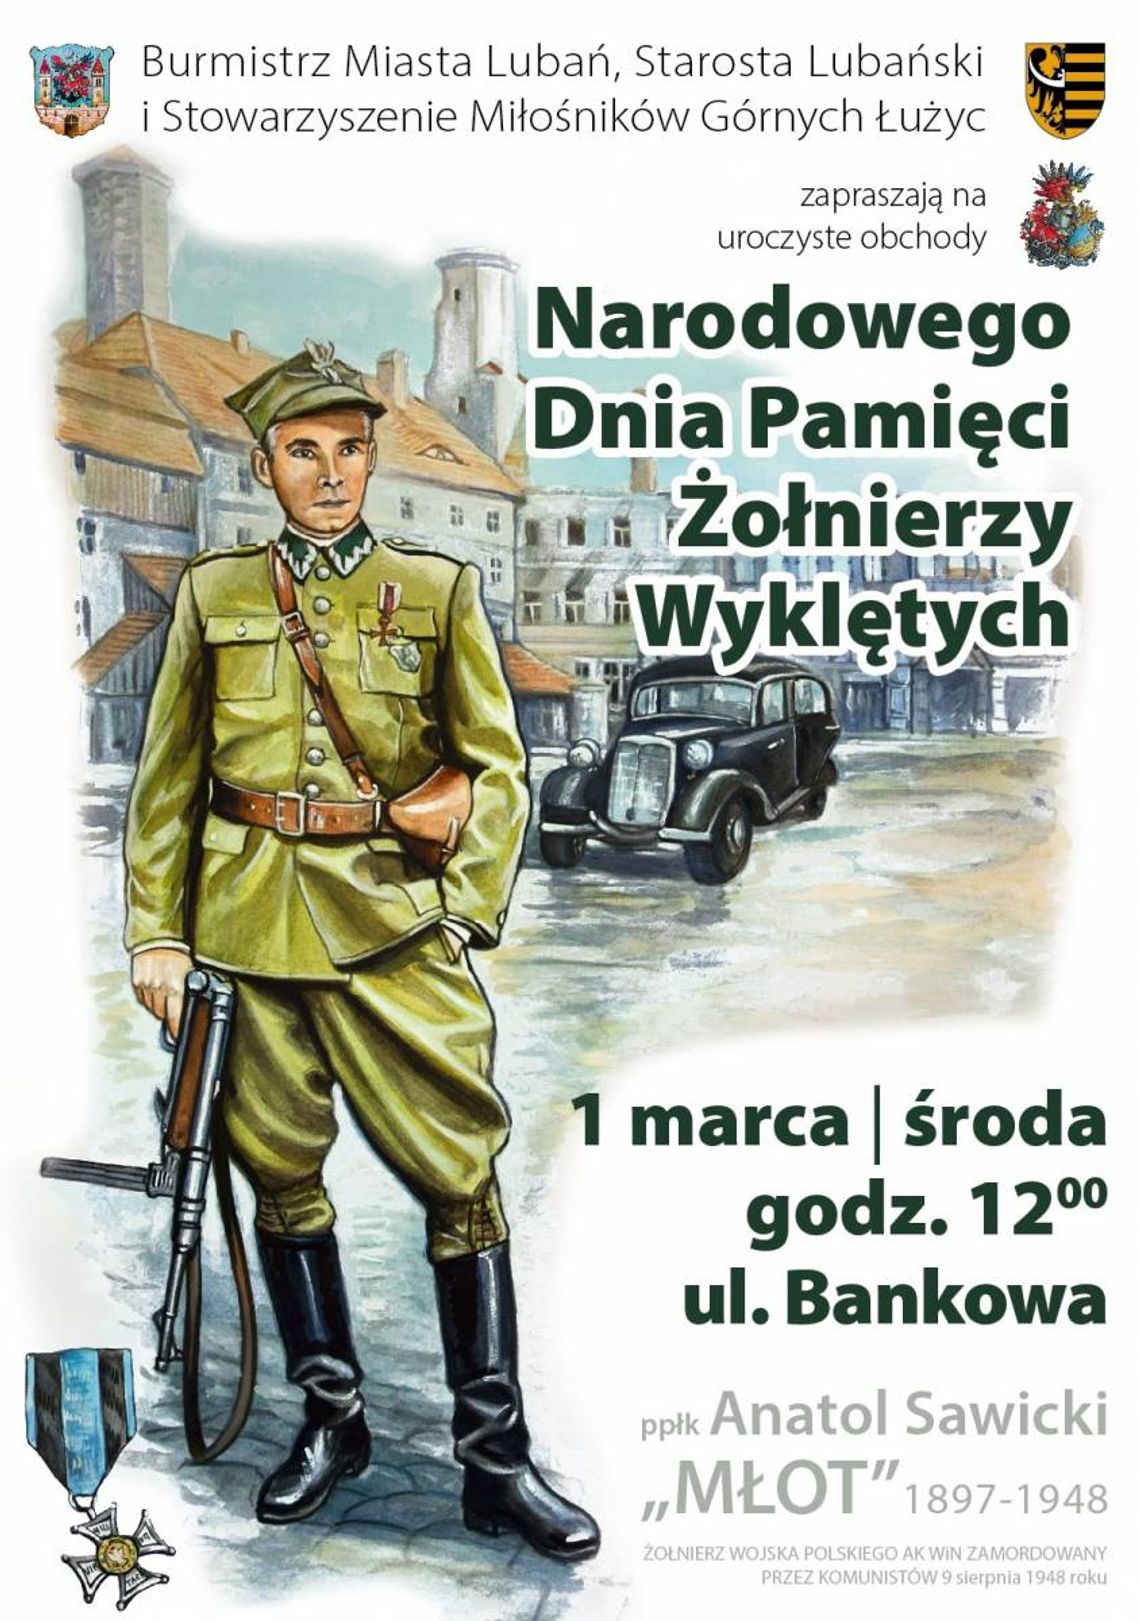 Lubań. Obchody Narodowego Dnia Pamięci Żołnierzy Wyklętych